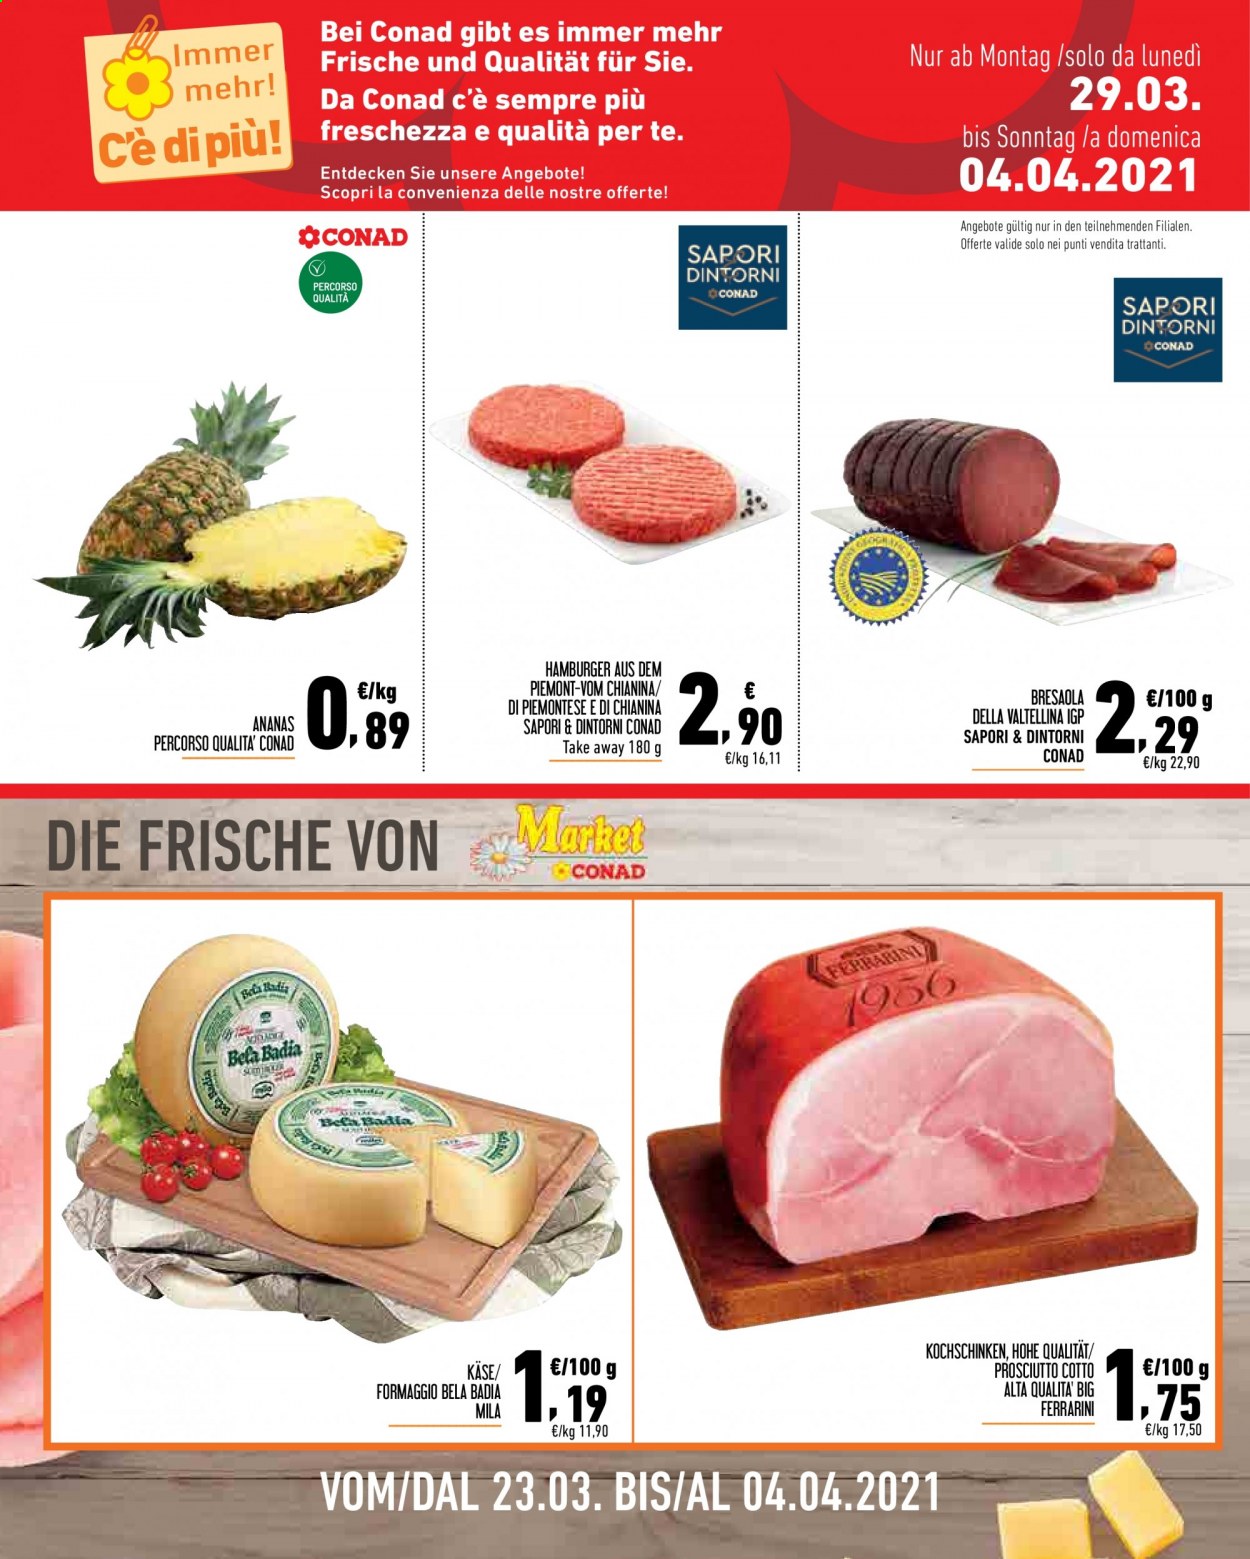 thumbnail - Volantino Conad - 23/3/2021 - 4/4/2021 - Prodotti in offerta - ananas, hamburger, prosciutto, bresaola, prosciutto cotto, formaggio. Pagina 8.